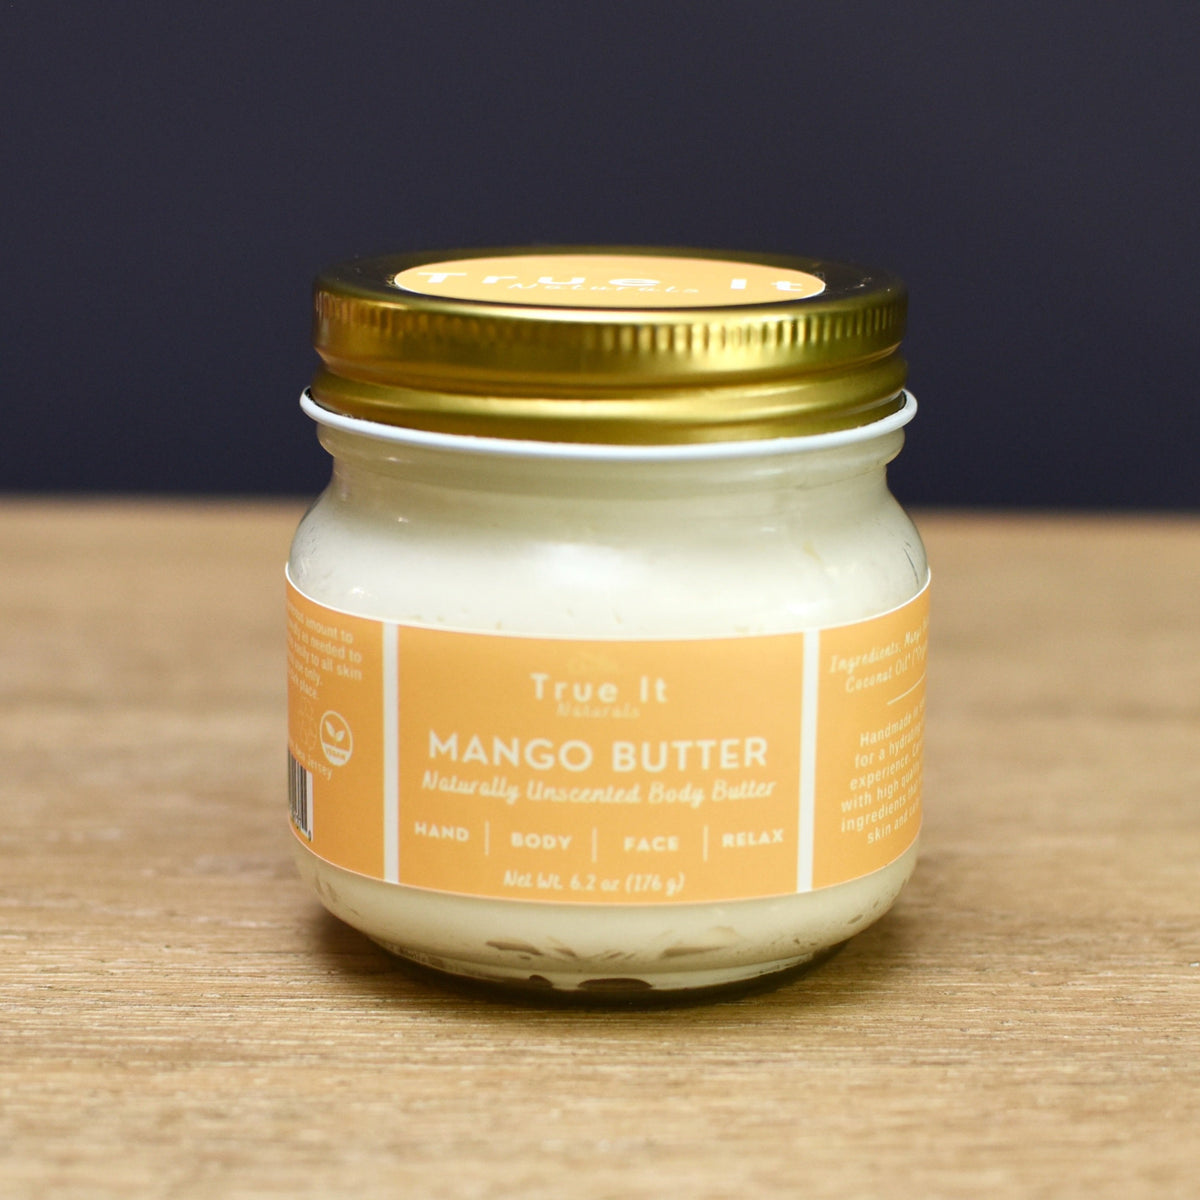  Bare Botanics Pure & Raw Mango Body Butter (Unscented